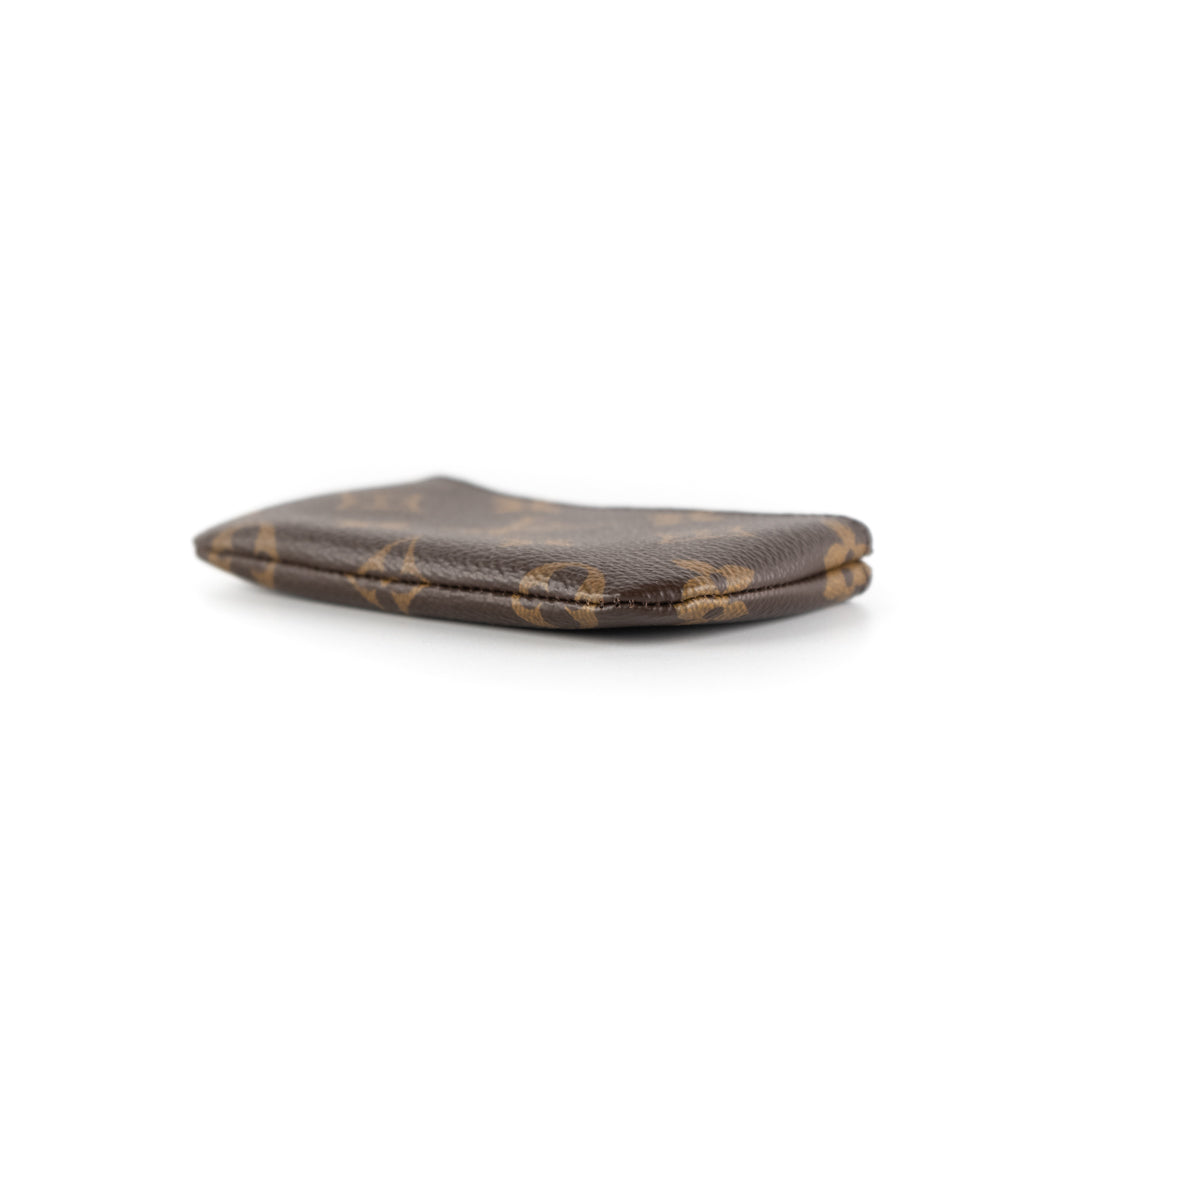 Shop Louis Vuitton Key pouch (POCHETTE CLES, M80885) by Mikrie